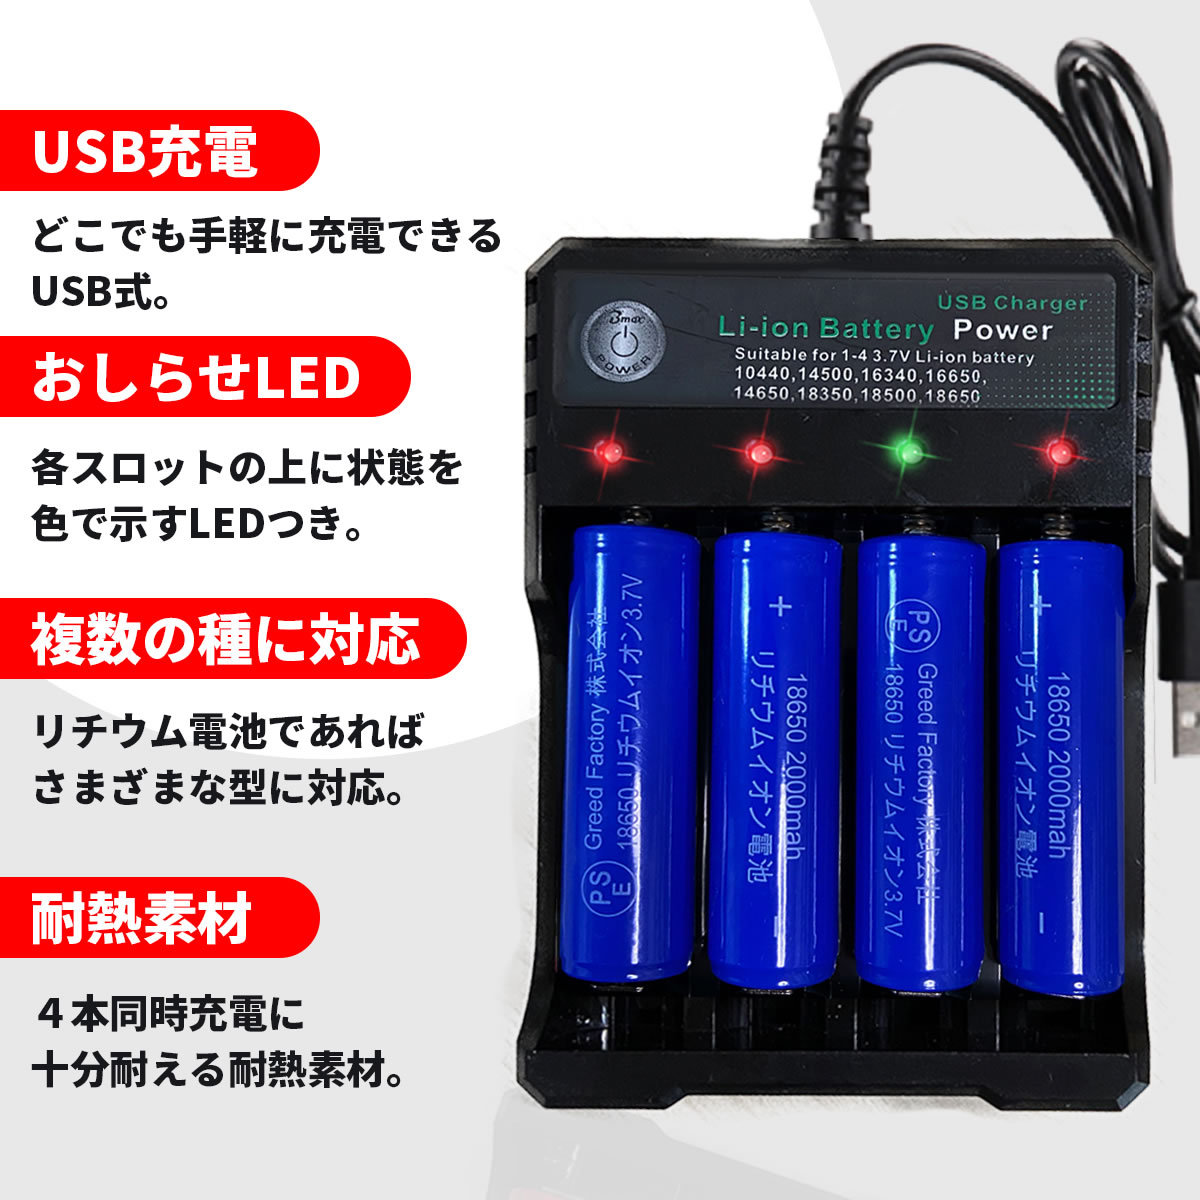 リチウムイオン充電器 セット 電池4本 おまけ付 USB電源 ヘッドライト 懐中電灯 LEDライト 保護回路 過充電防止機能 ポイント消化  :a00226:ガリペット 通販 